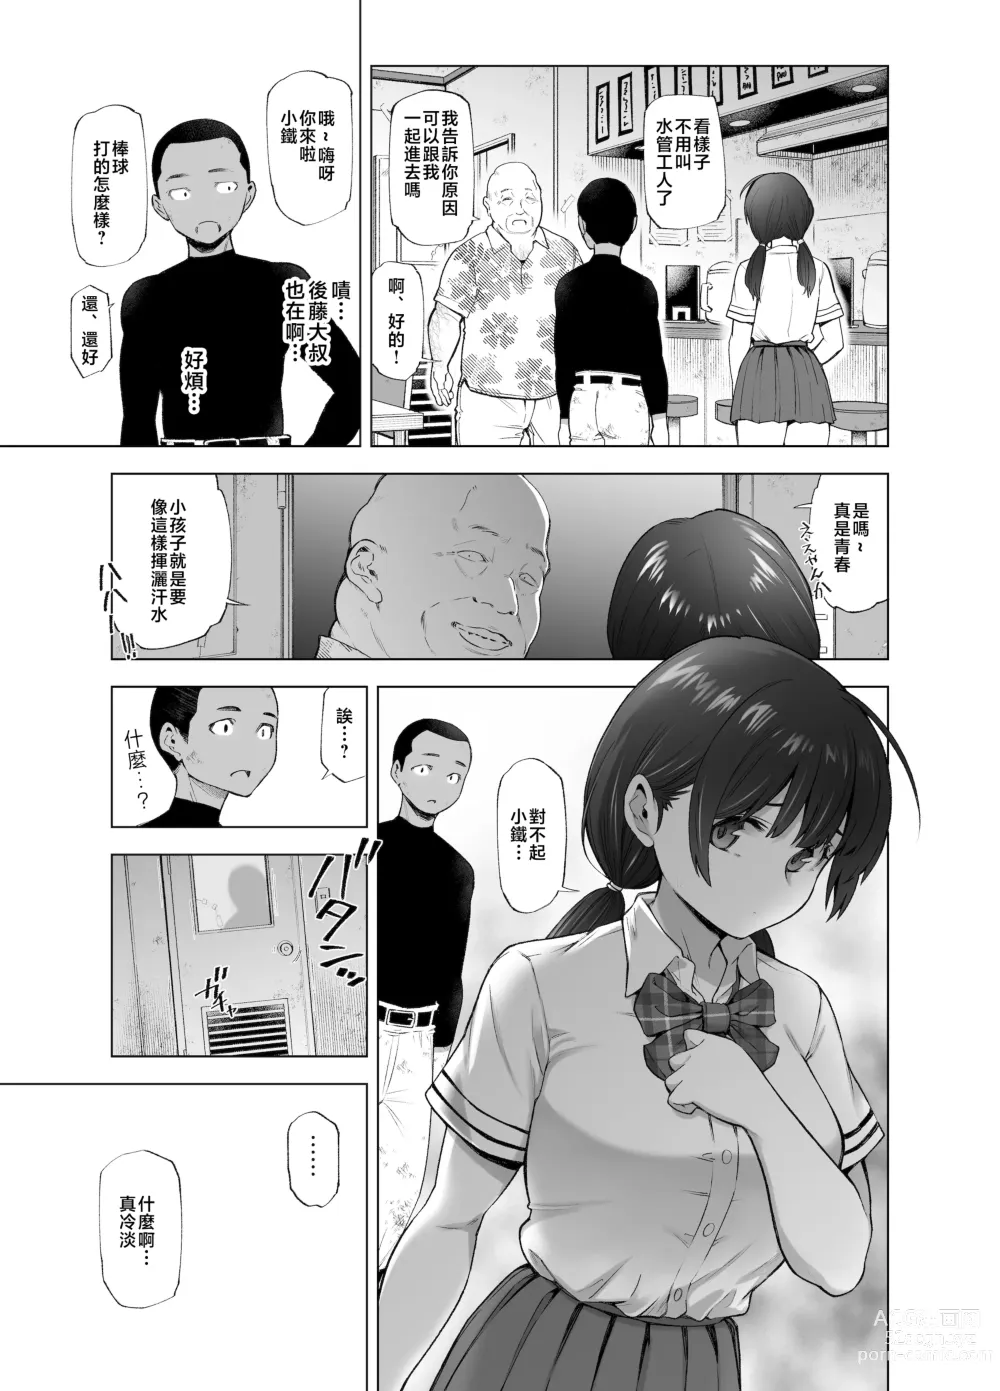 Page 34 of doujinshi Sakura Saku Chiru Hanabira Tsubomi Hokorobibu ~Ossan no Nikutsubo e to Ochi Hateta Saiai no Osananajimi Yoshioka Mio~